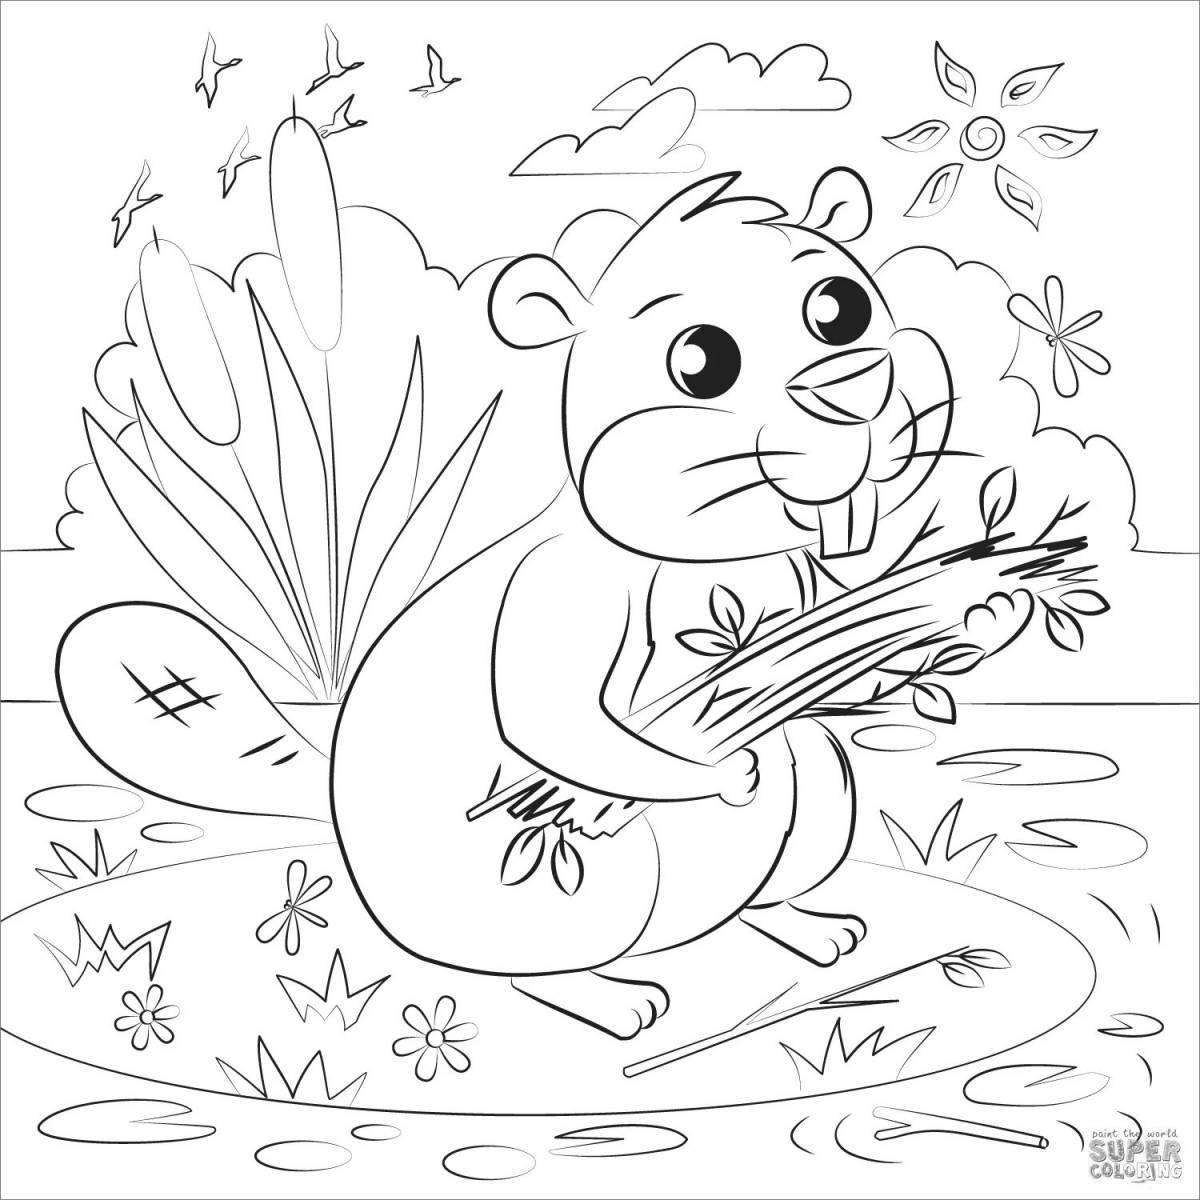 Great river beaver coloring book